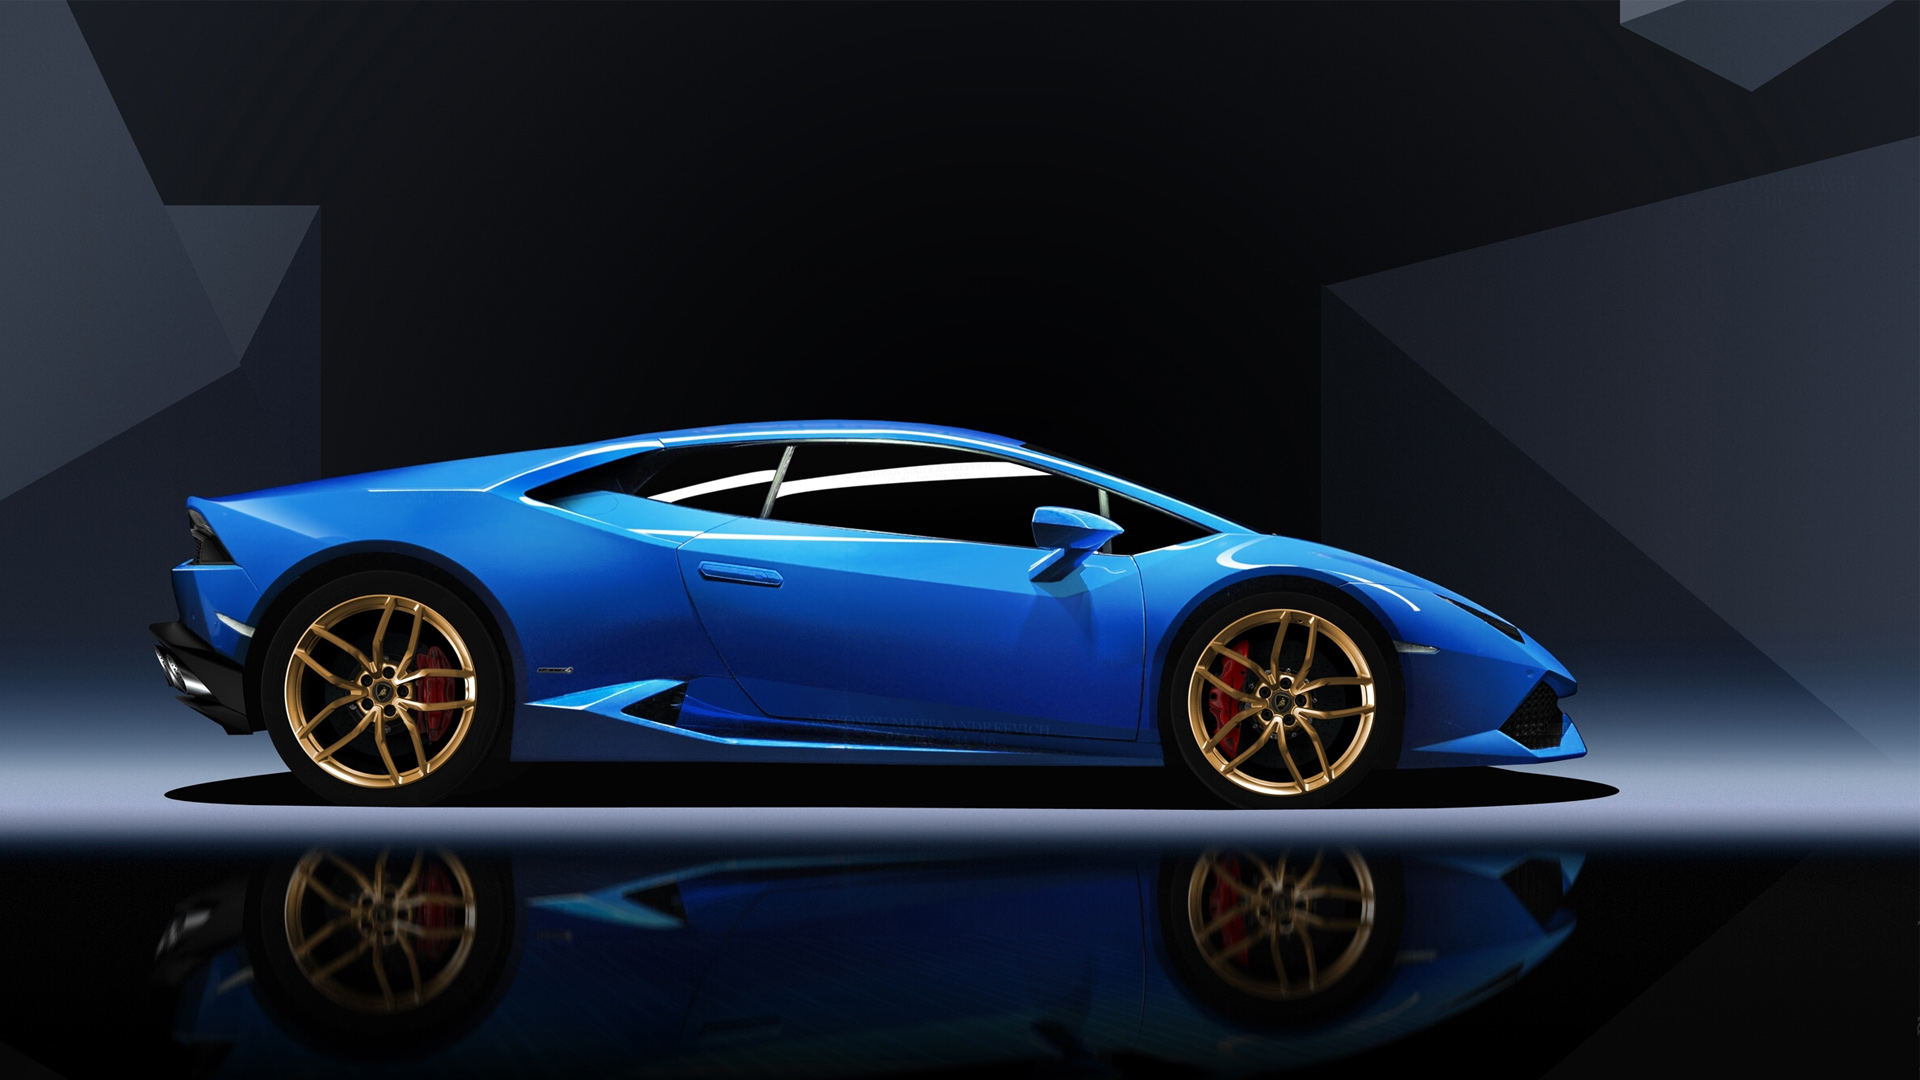 Blue Lamborghini Huracan Wallpaper | HD Car Wallpapers | ID #5761